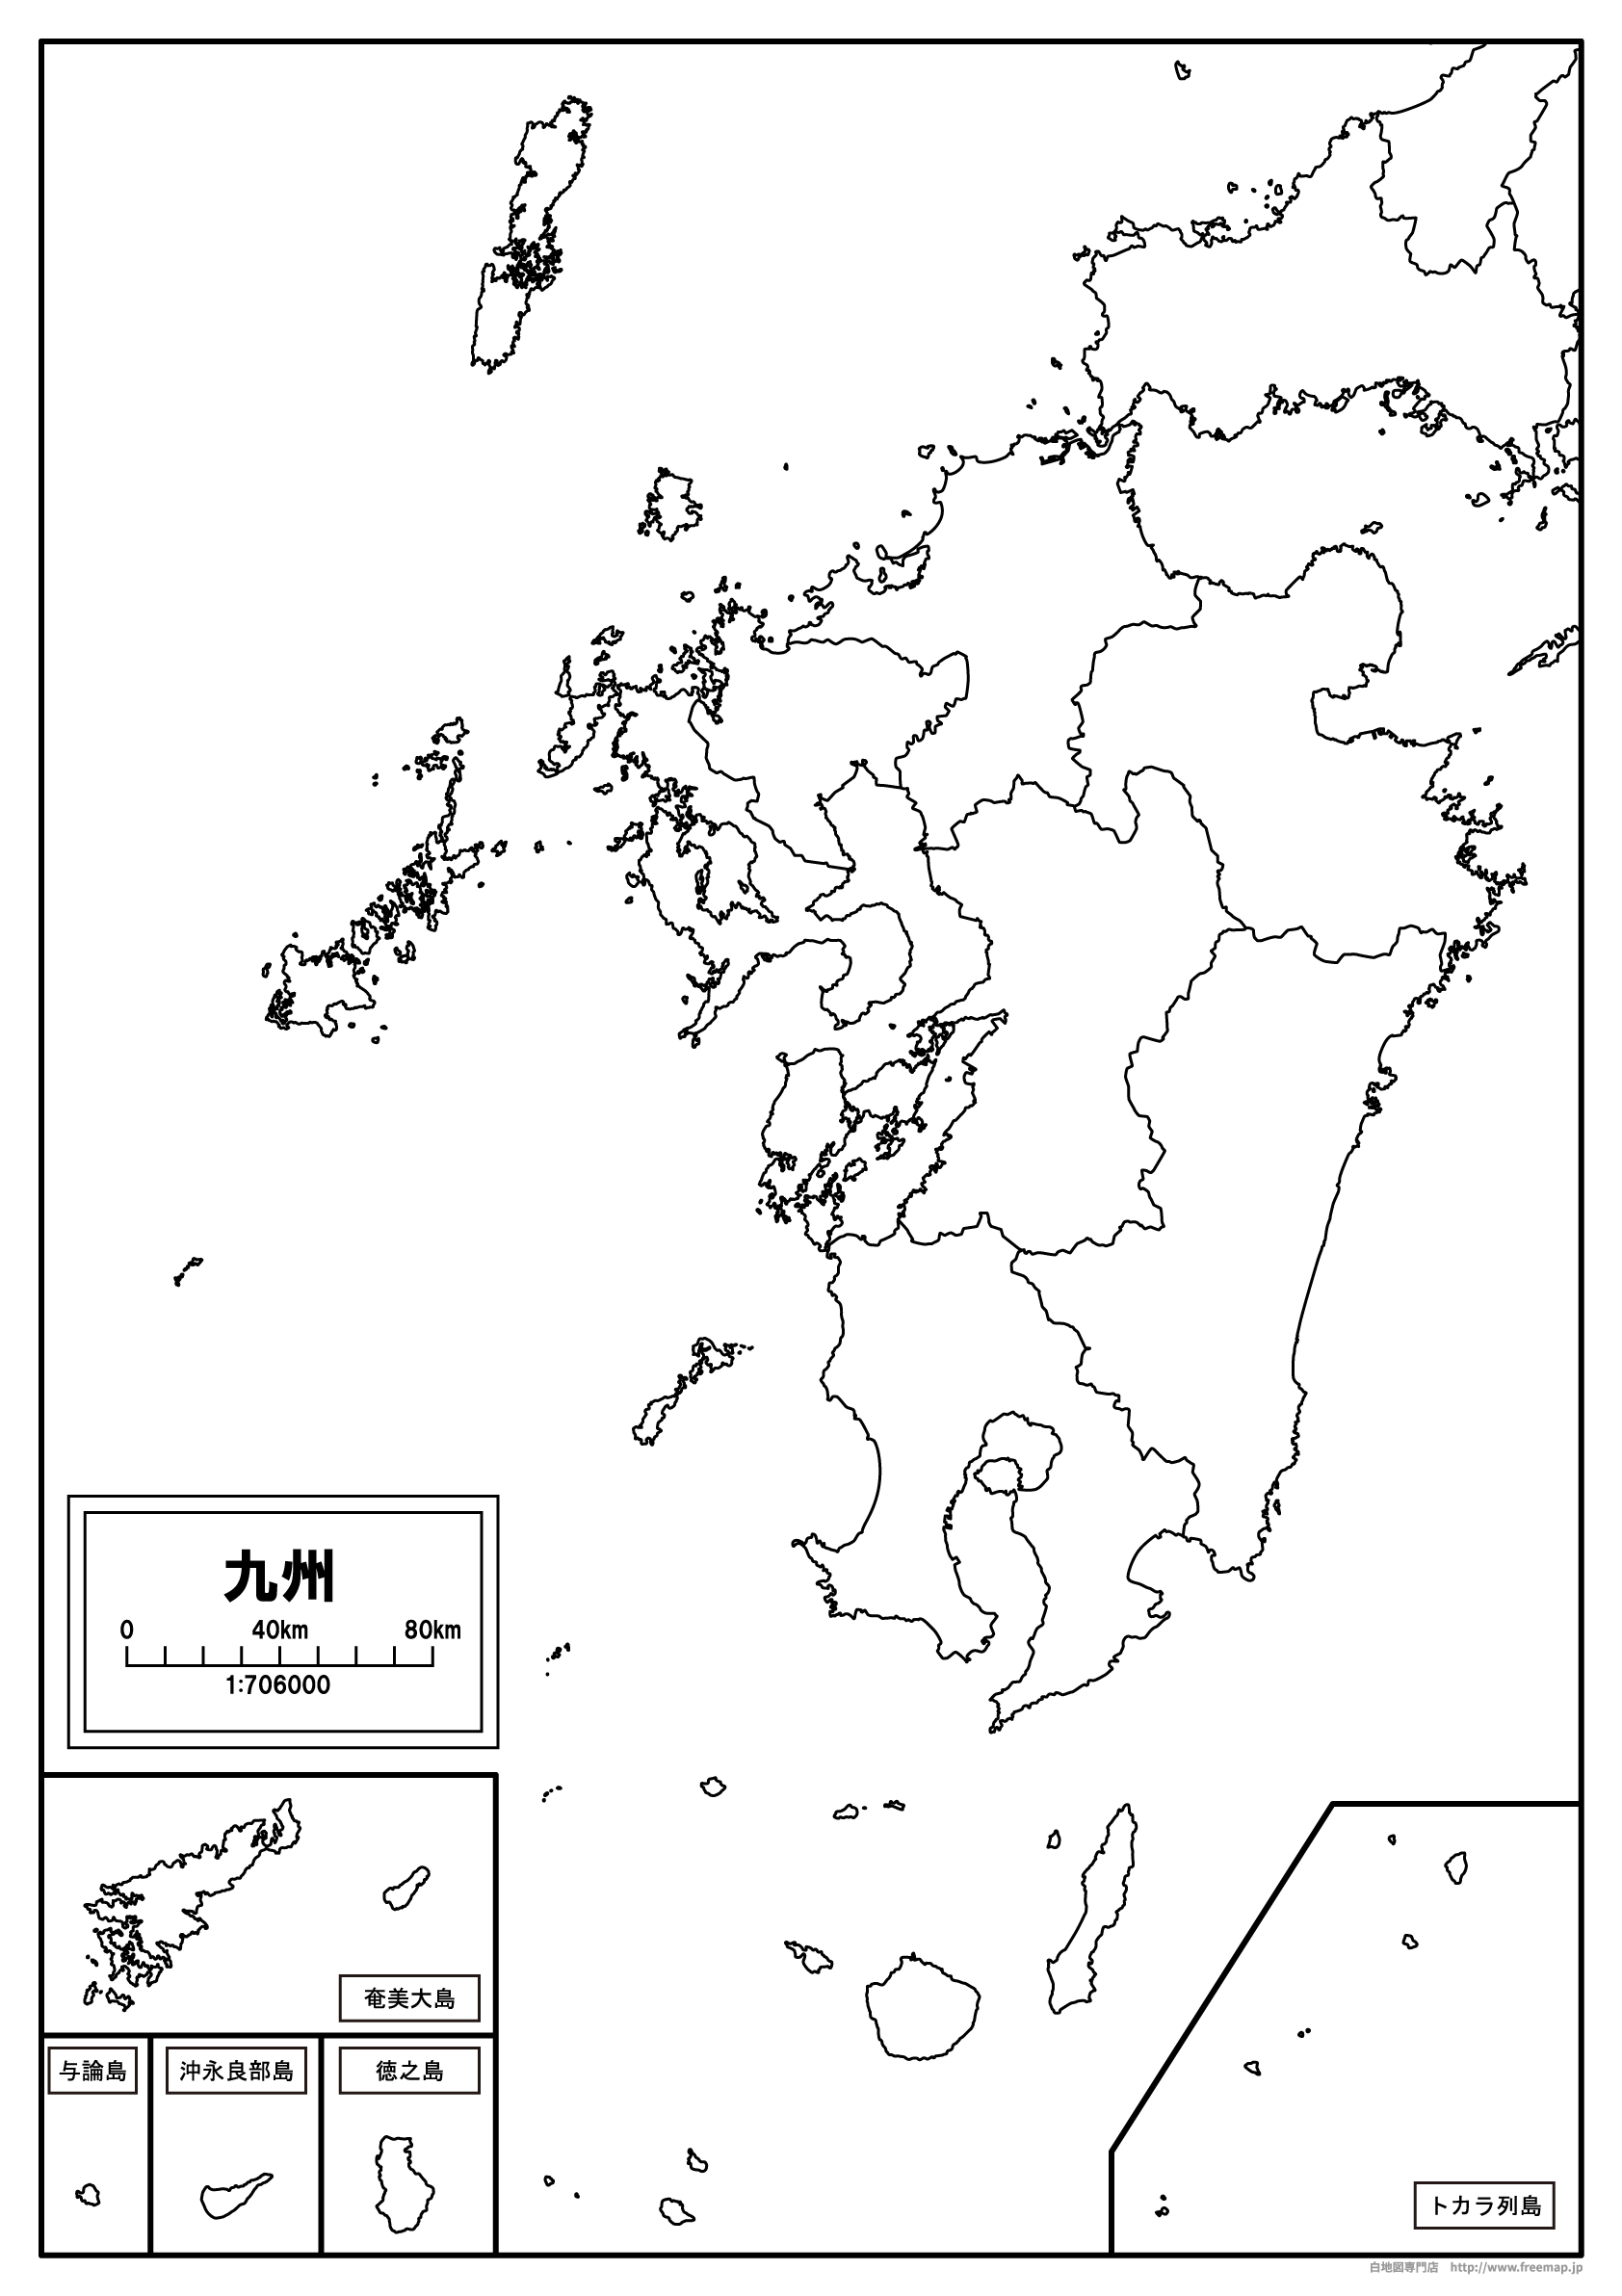 【白地図】九州地方